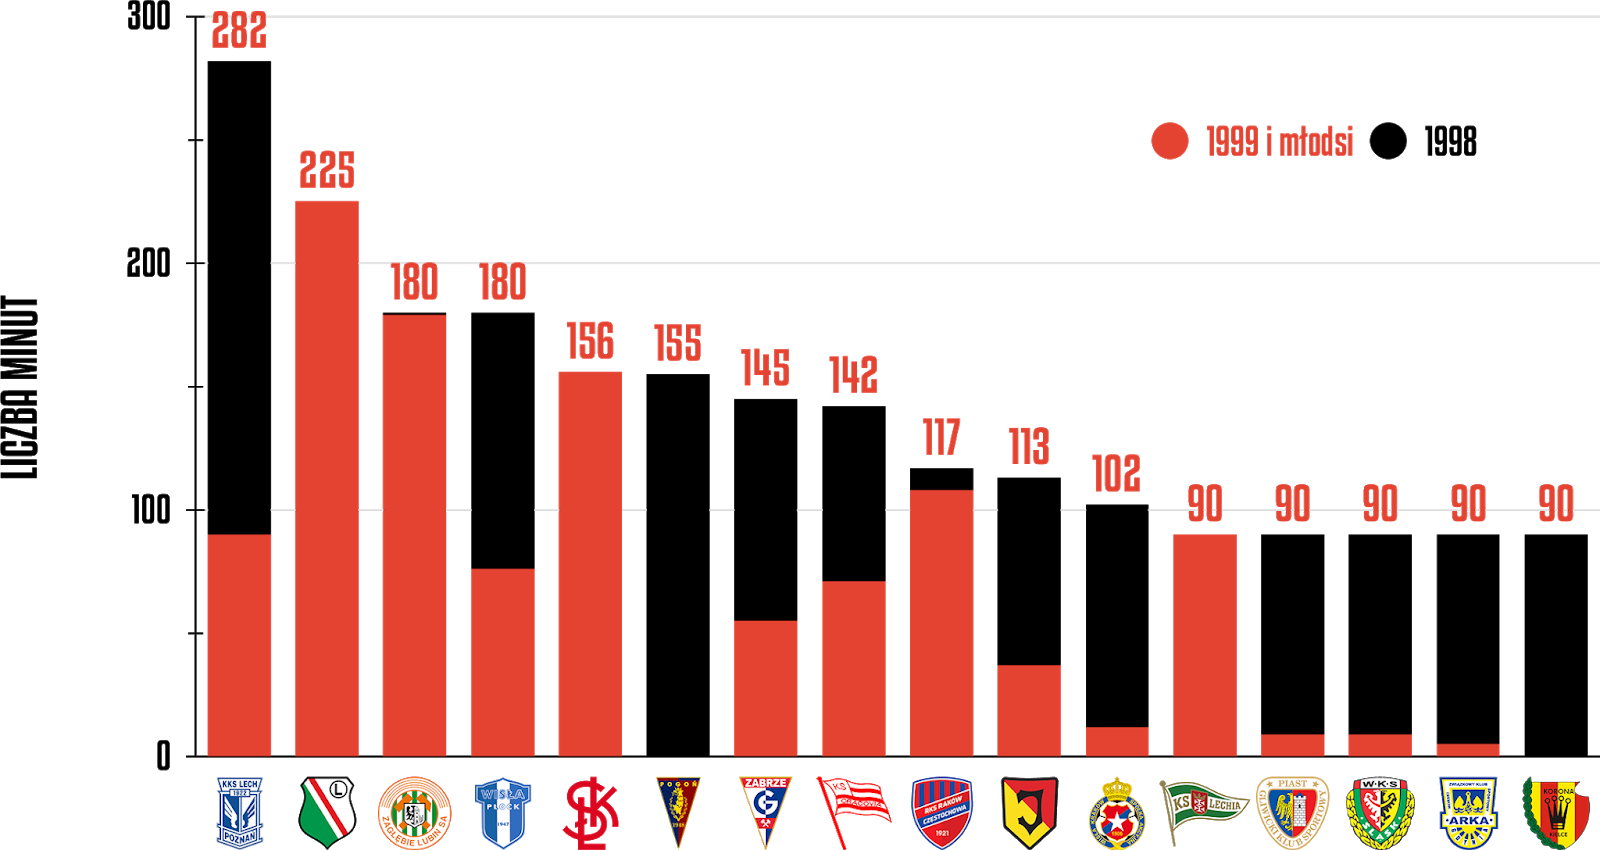 Klasyfikacja klubów pod względem rozegranych minut przez młodzieżowców w 15. kolejce PKO Ekstraklasy<br><br>Źródło: Opracowanie własne na podstawie ekstrastats.pl<br><br>graf. Bartosz Urban